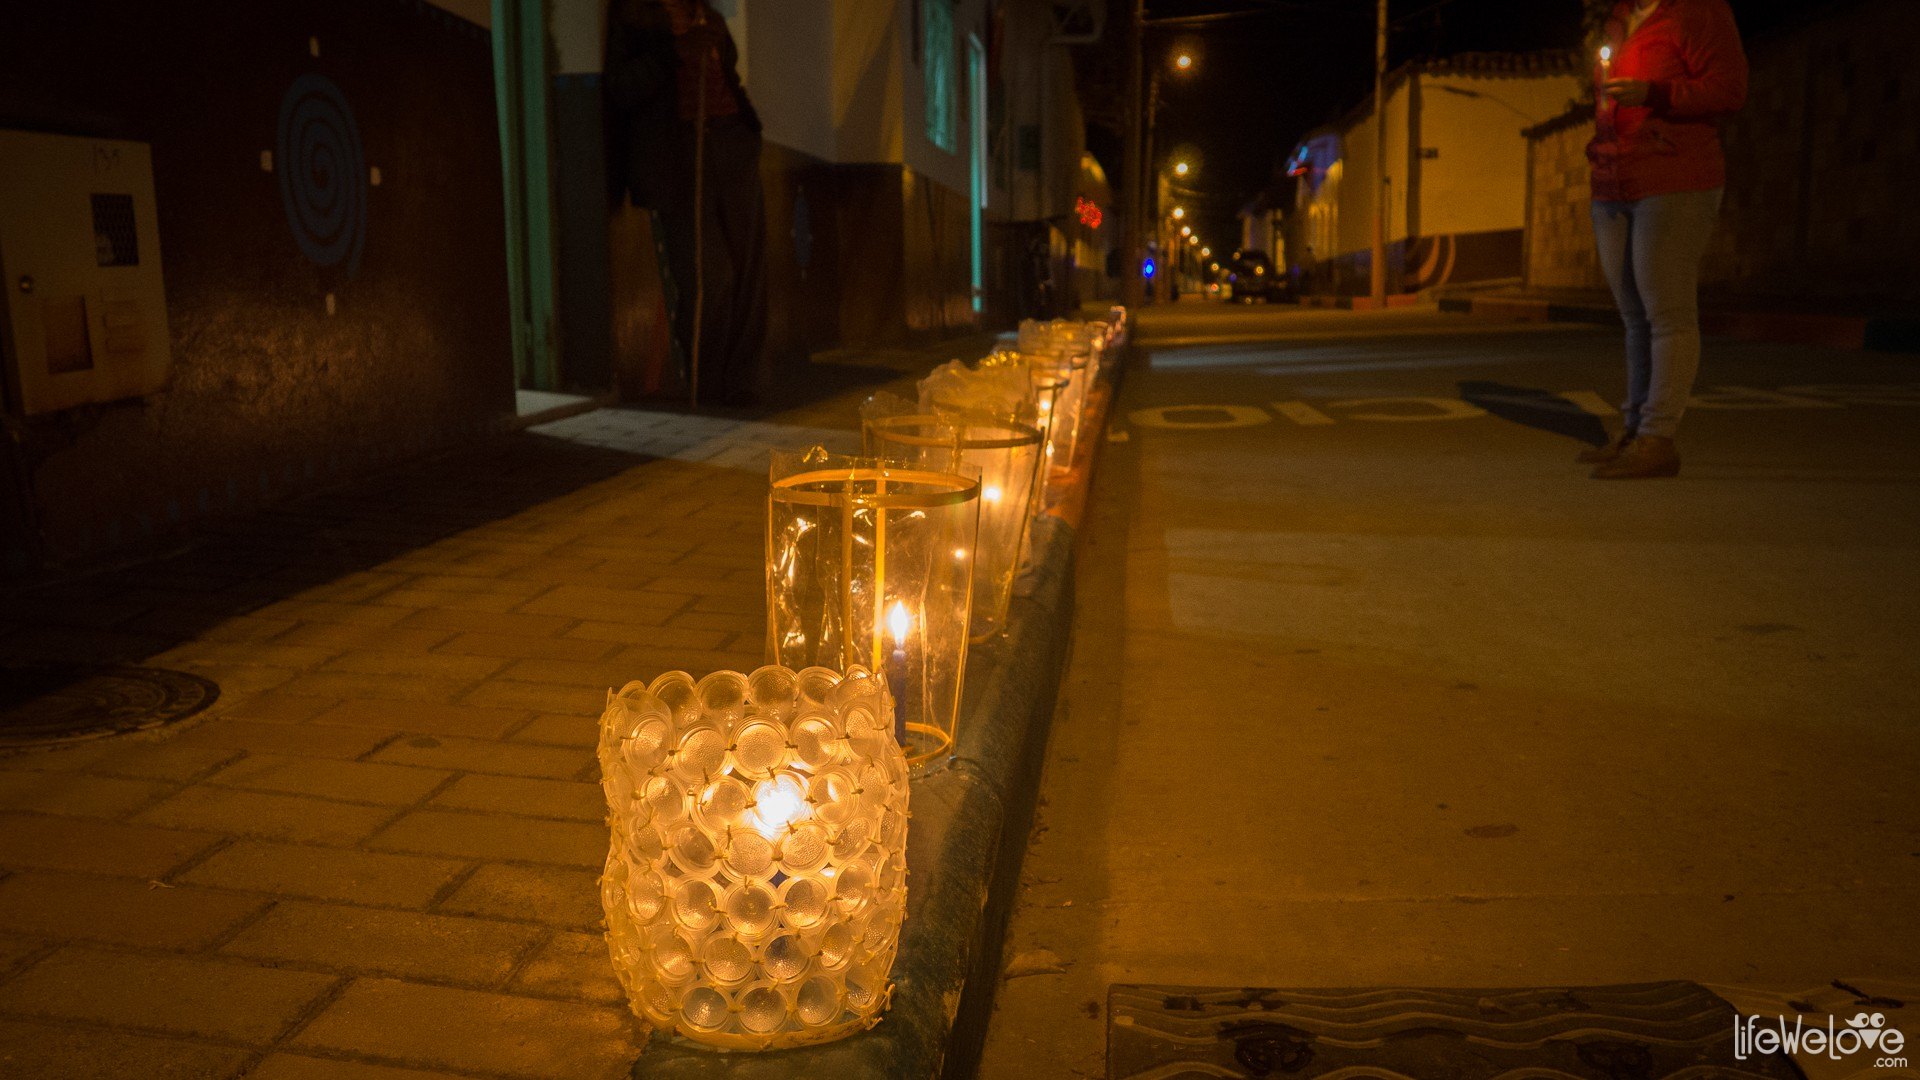 Dia de las velitas in Colombia: a walk around the city of ...